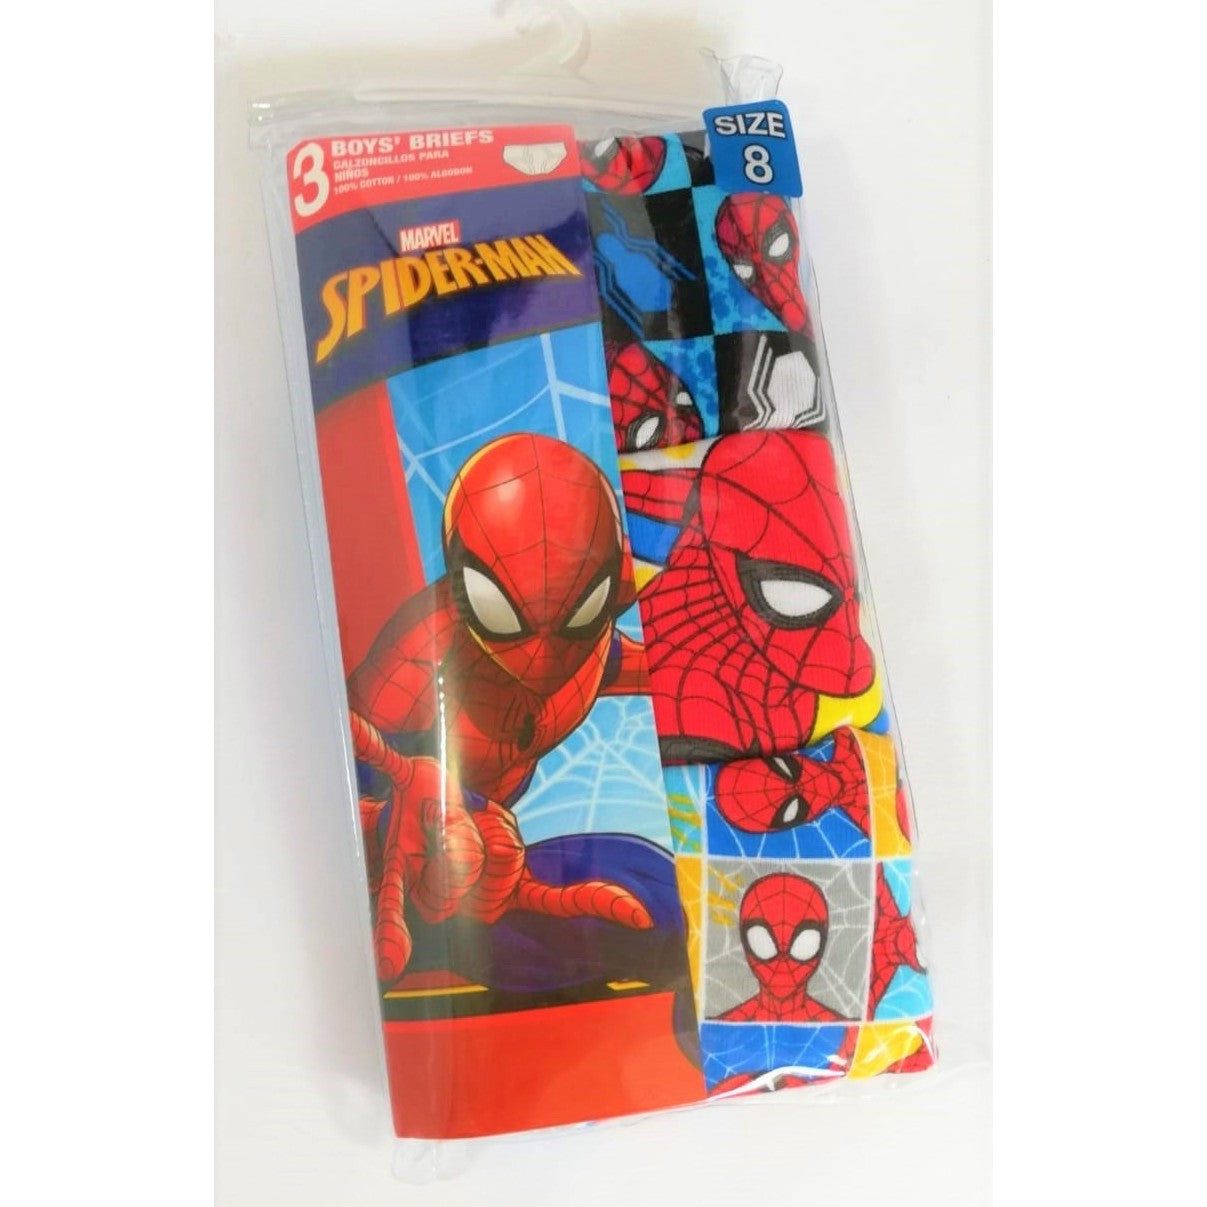 Calzoncillo para niño de Spiderman, 3 unid. - The Gift Shop Costa Rica